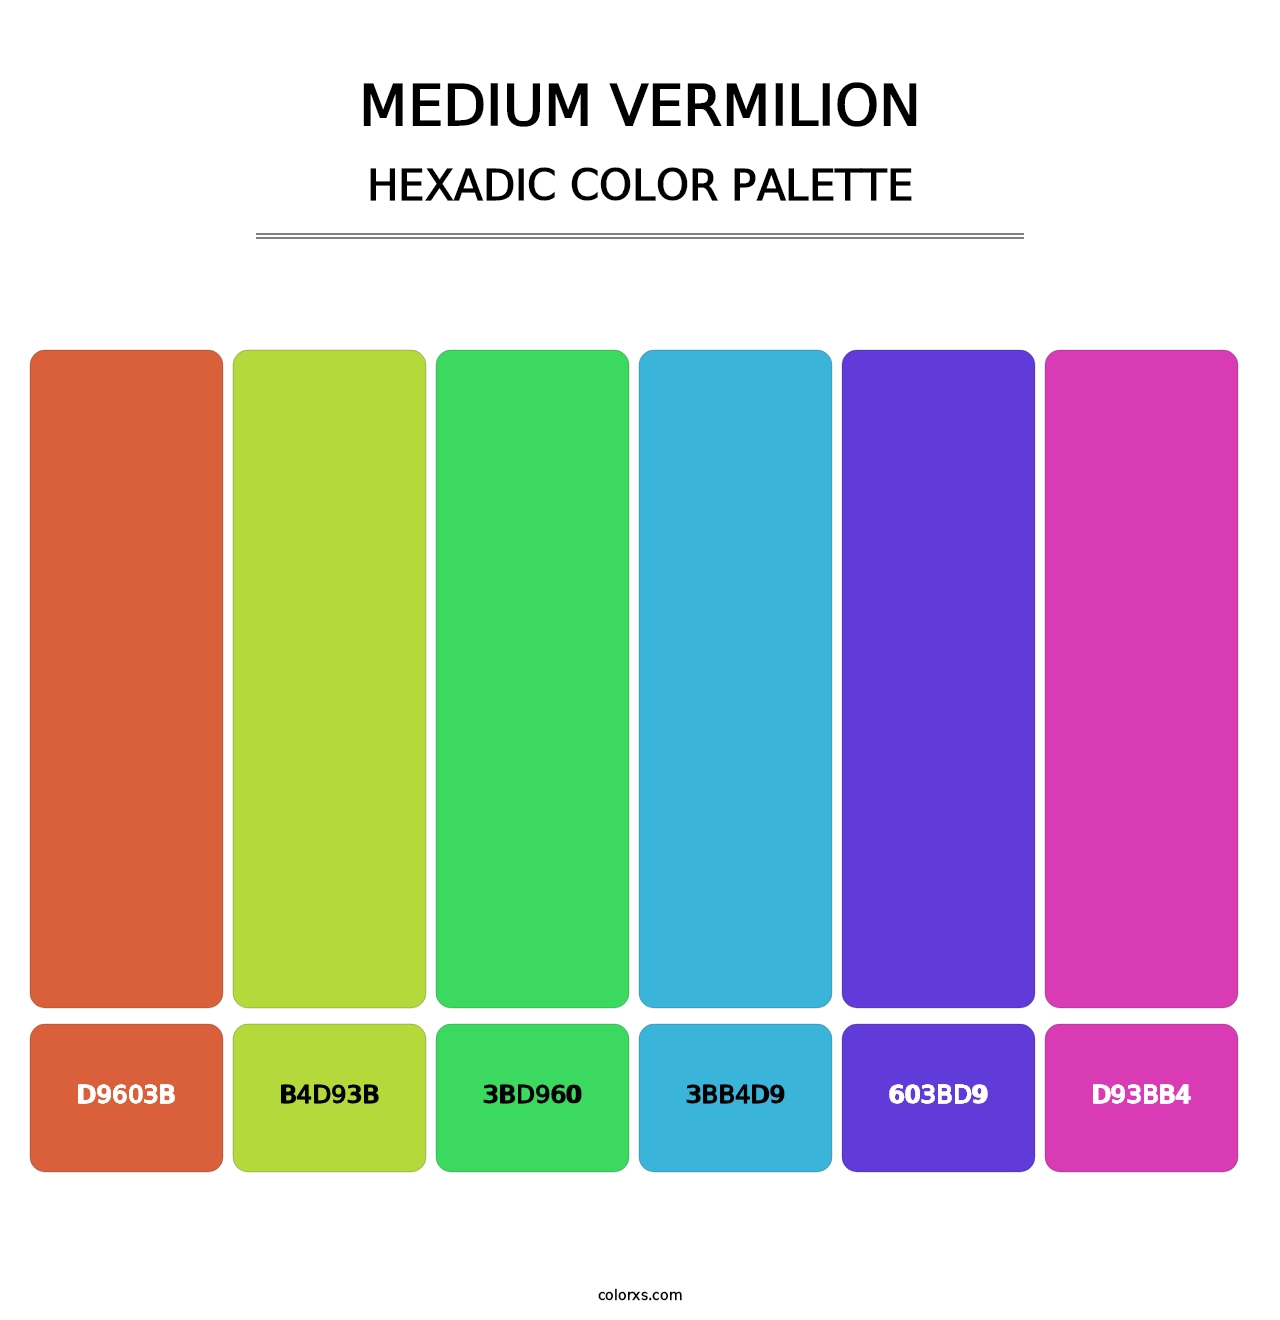 Medium Vermilion - Hexadic Color Palette